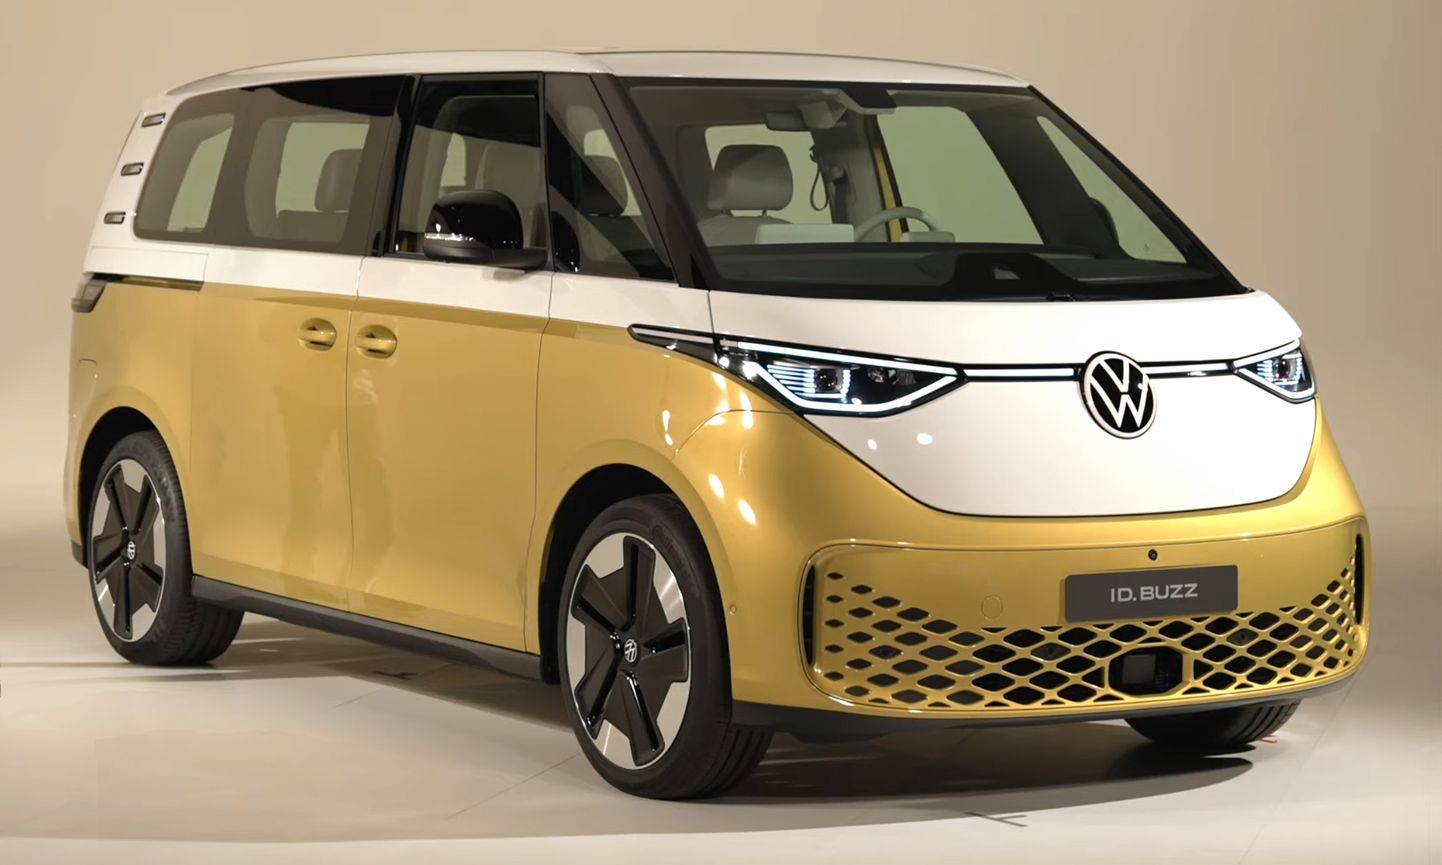 Volkswageni täieselektriline Buzz hüppab oma hinnasildiga üle luksusauto hinnapiiri, milleks on praeguse kava kohaselt 60 000 eurot. Sellest alates tuleks riigile loovutada 6000 eurot. Samas on tegemist suure pere jaoks õiges mahus sõiduvahendiga, mitte luksusega.